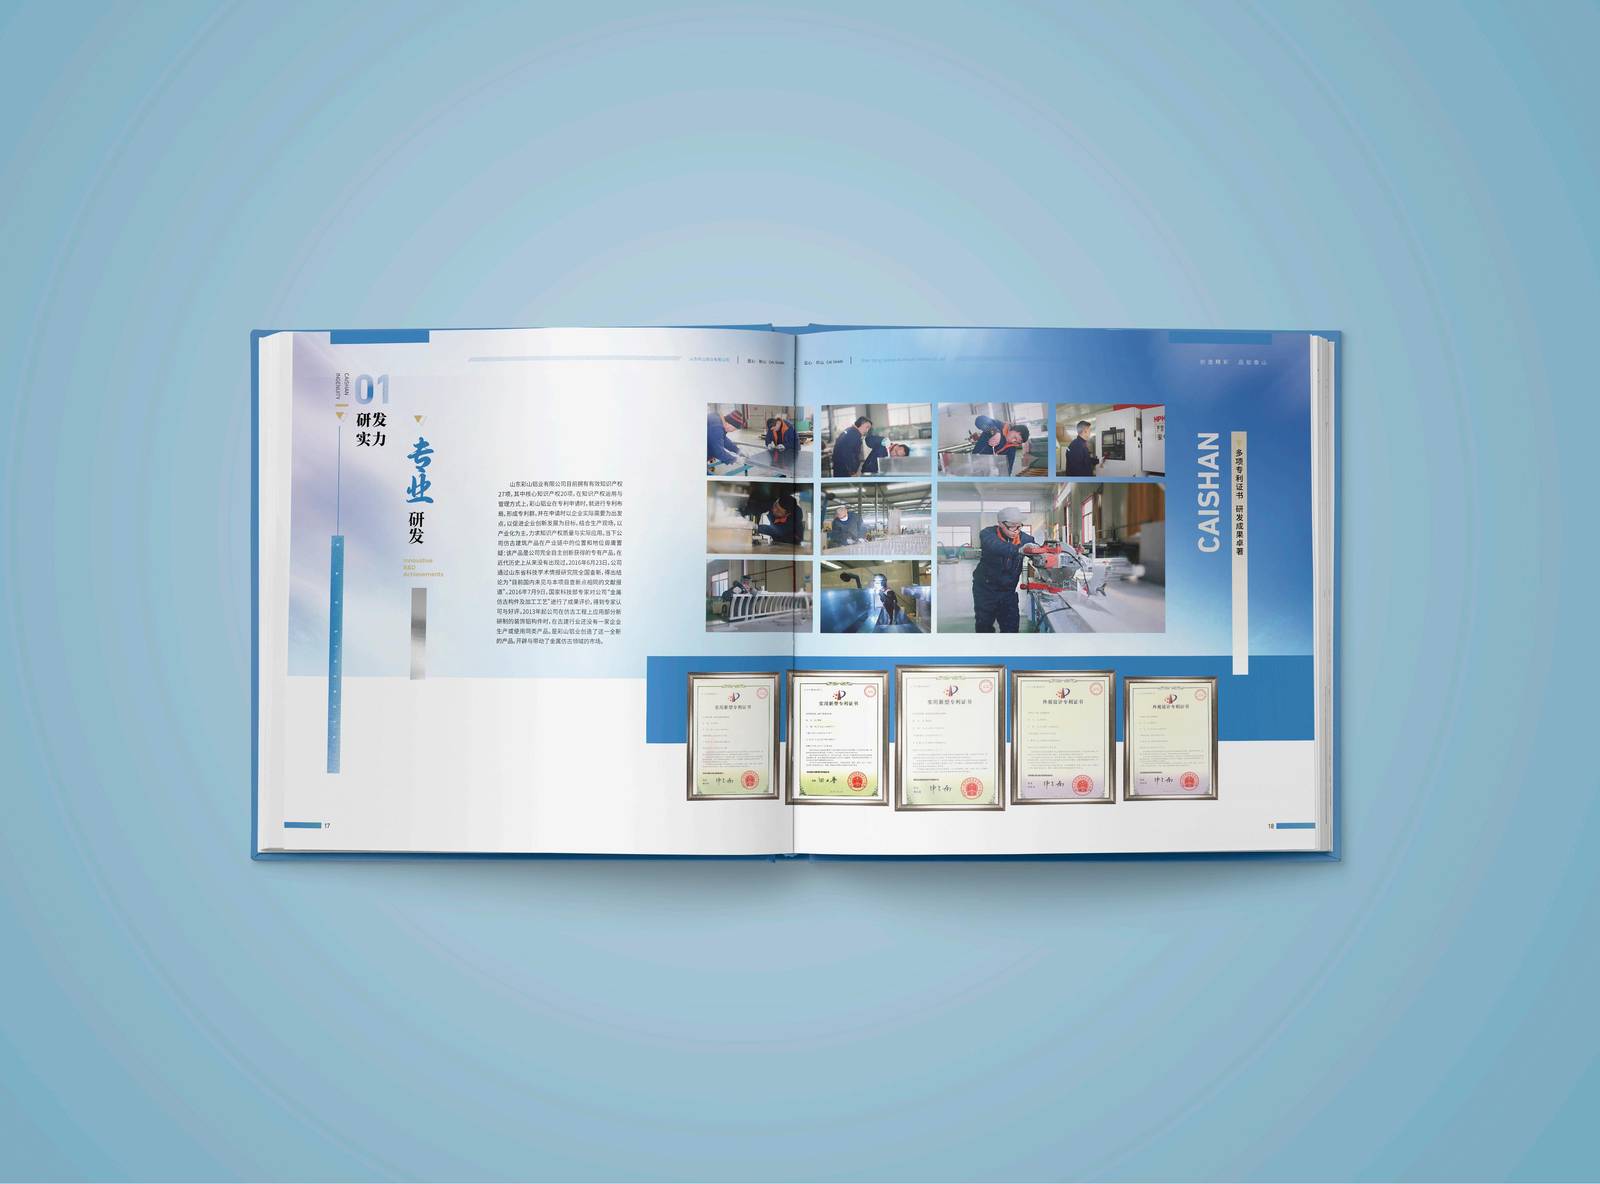 彩山铝业企业品牌印刷宣传册-第12张